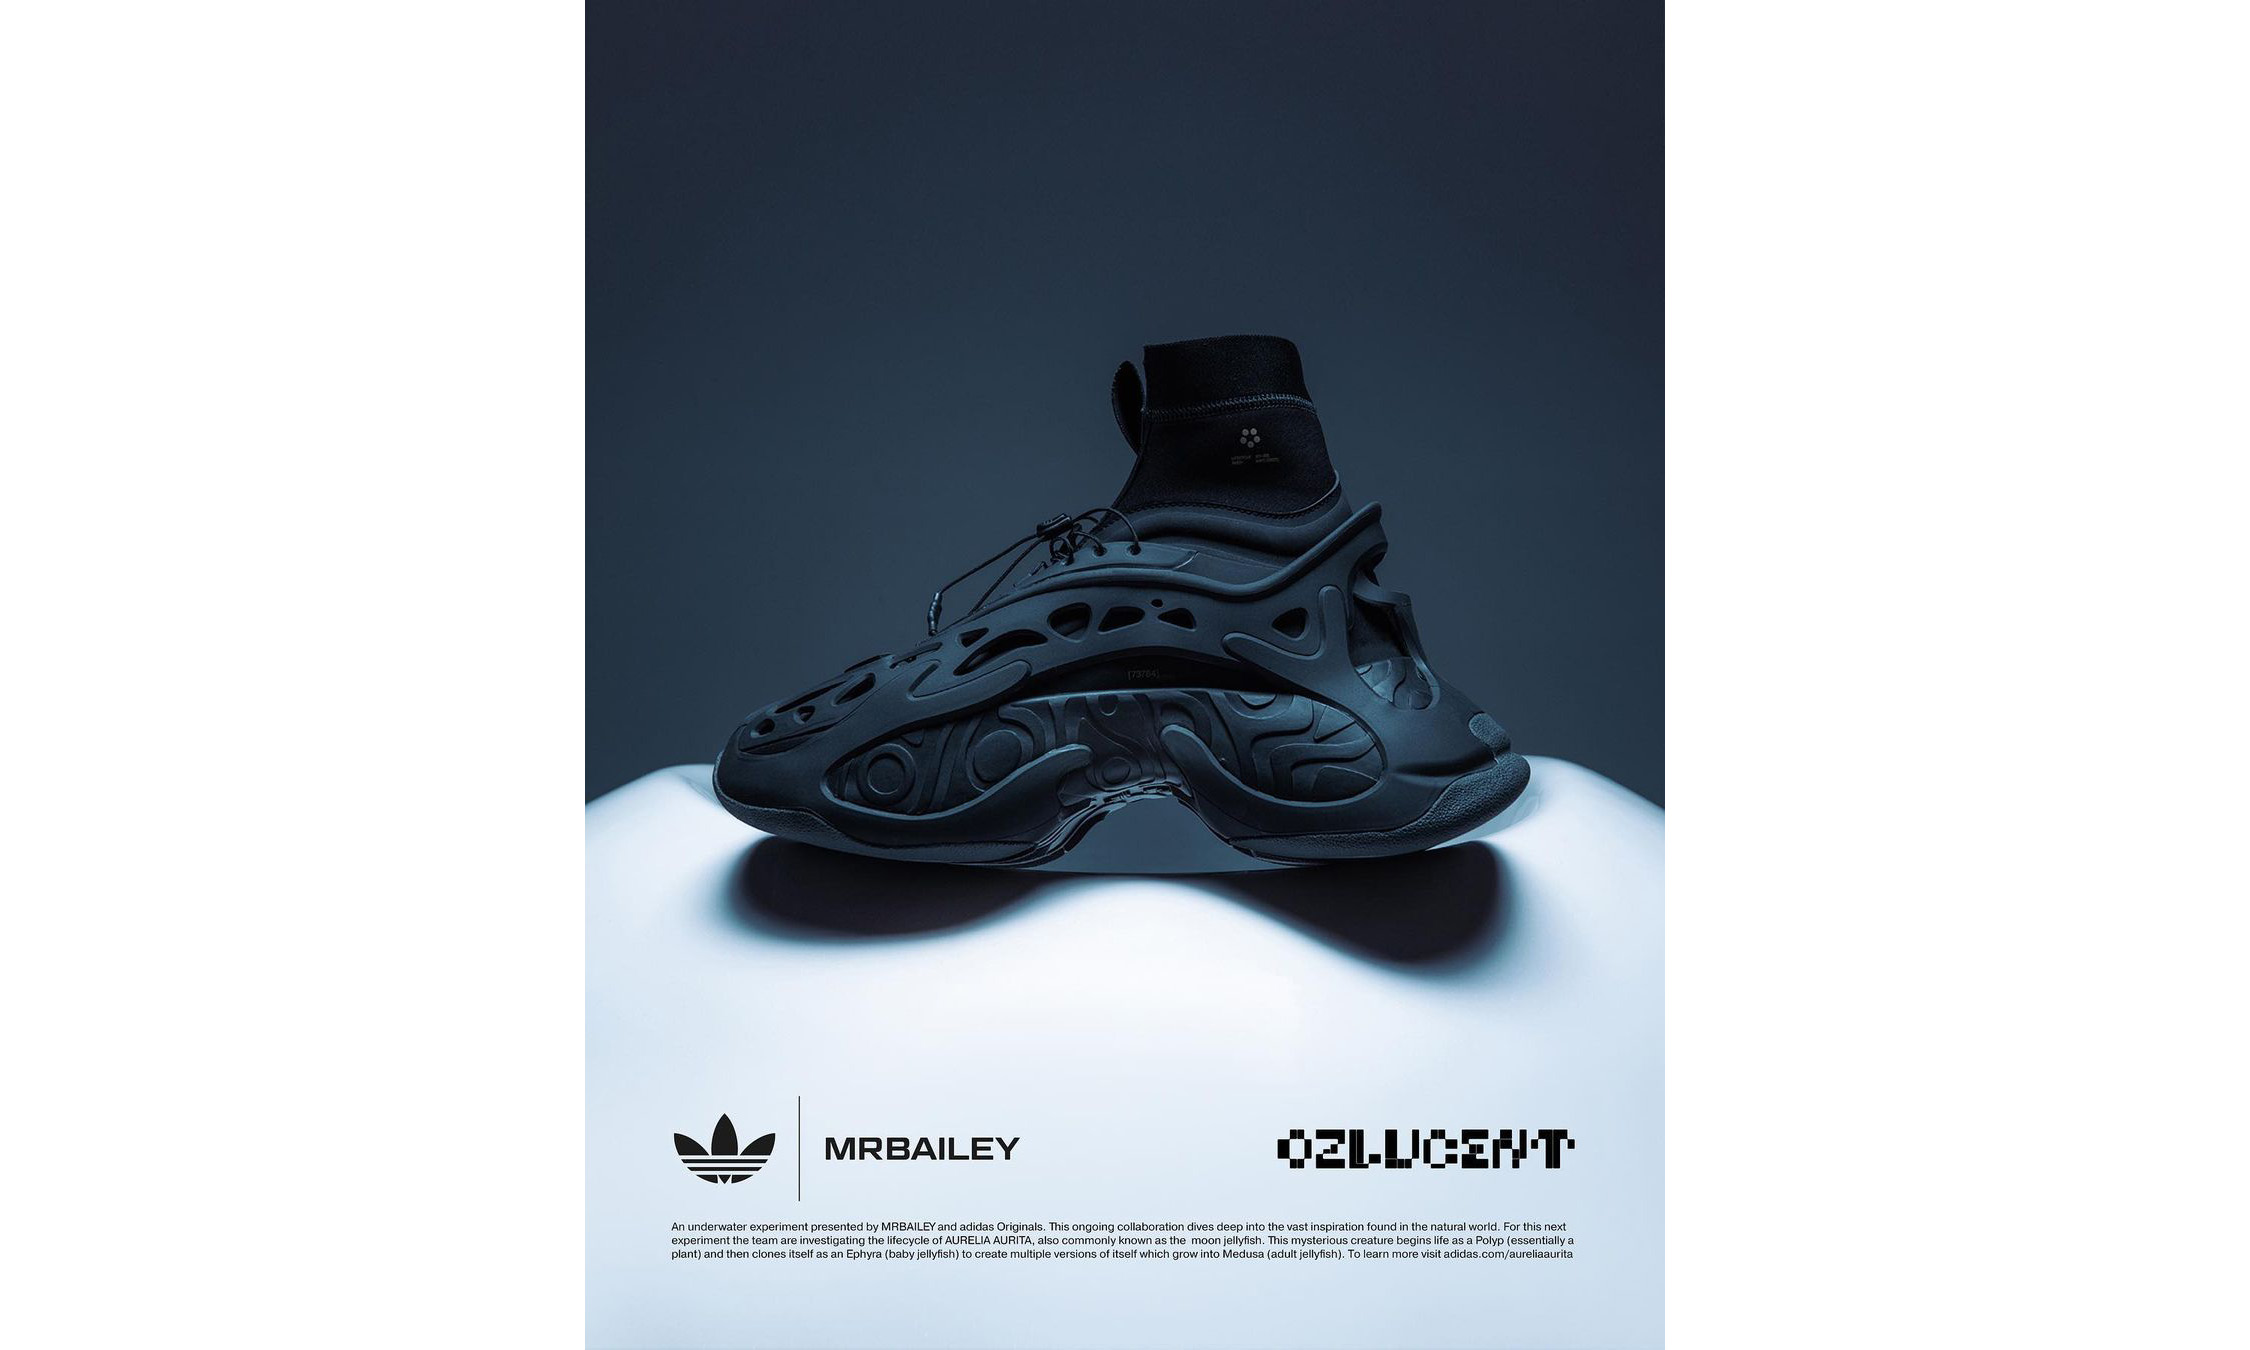 adidas Originals 联手设计师 MRBAILEY 打造「OZLUCENT」鞋款